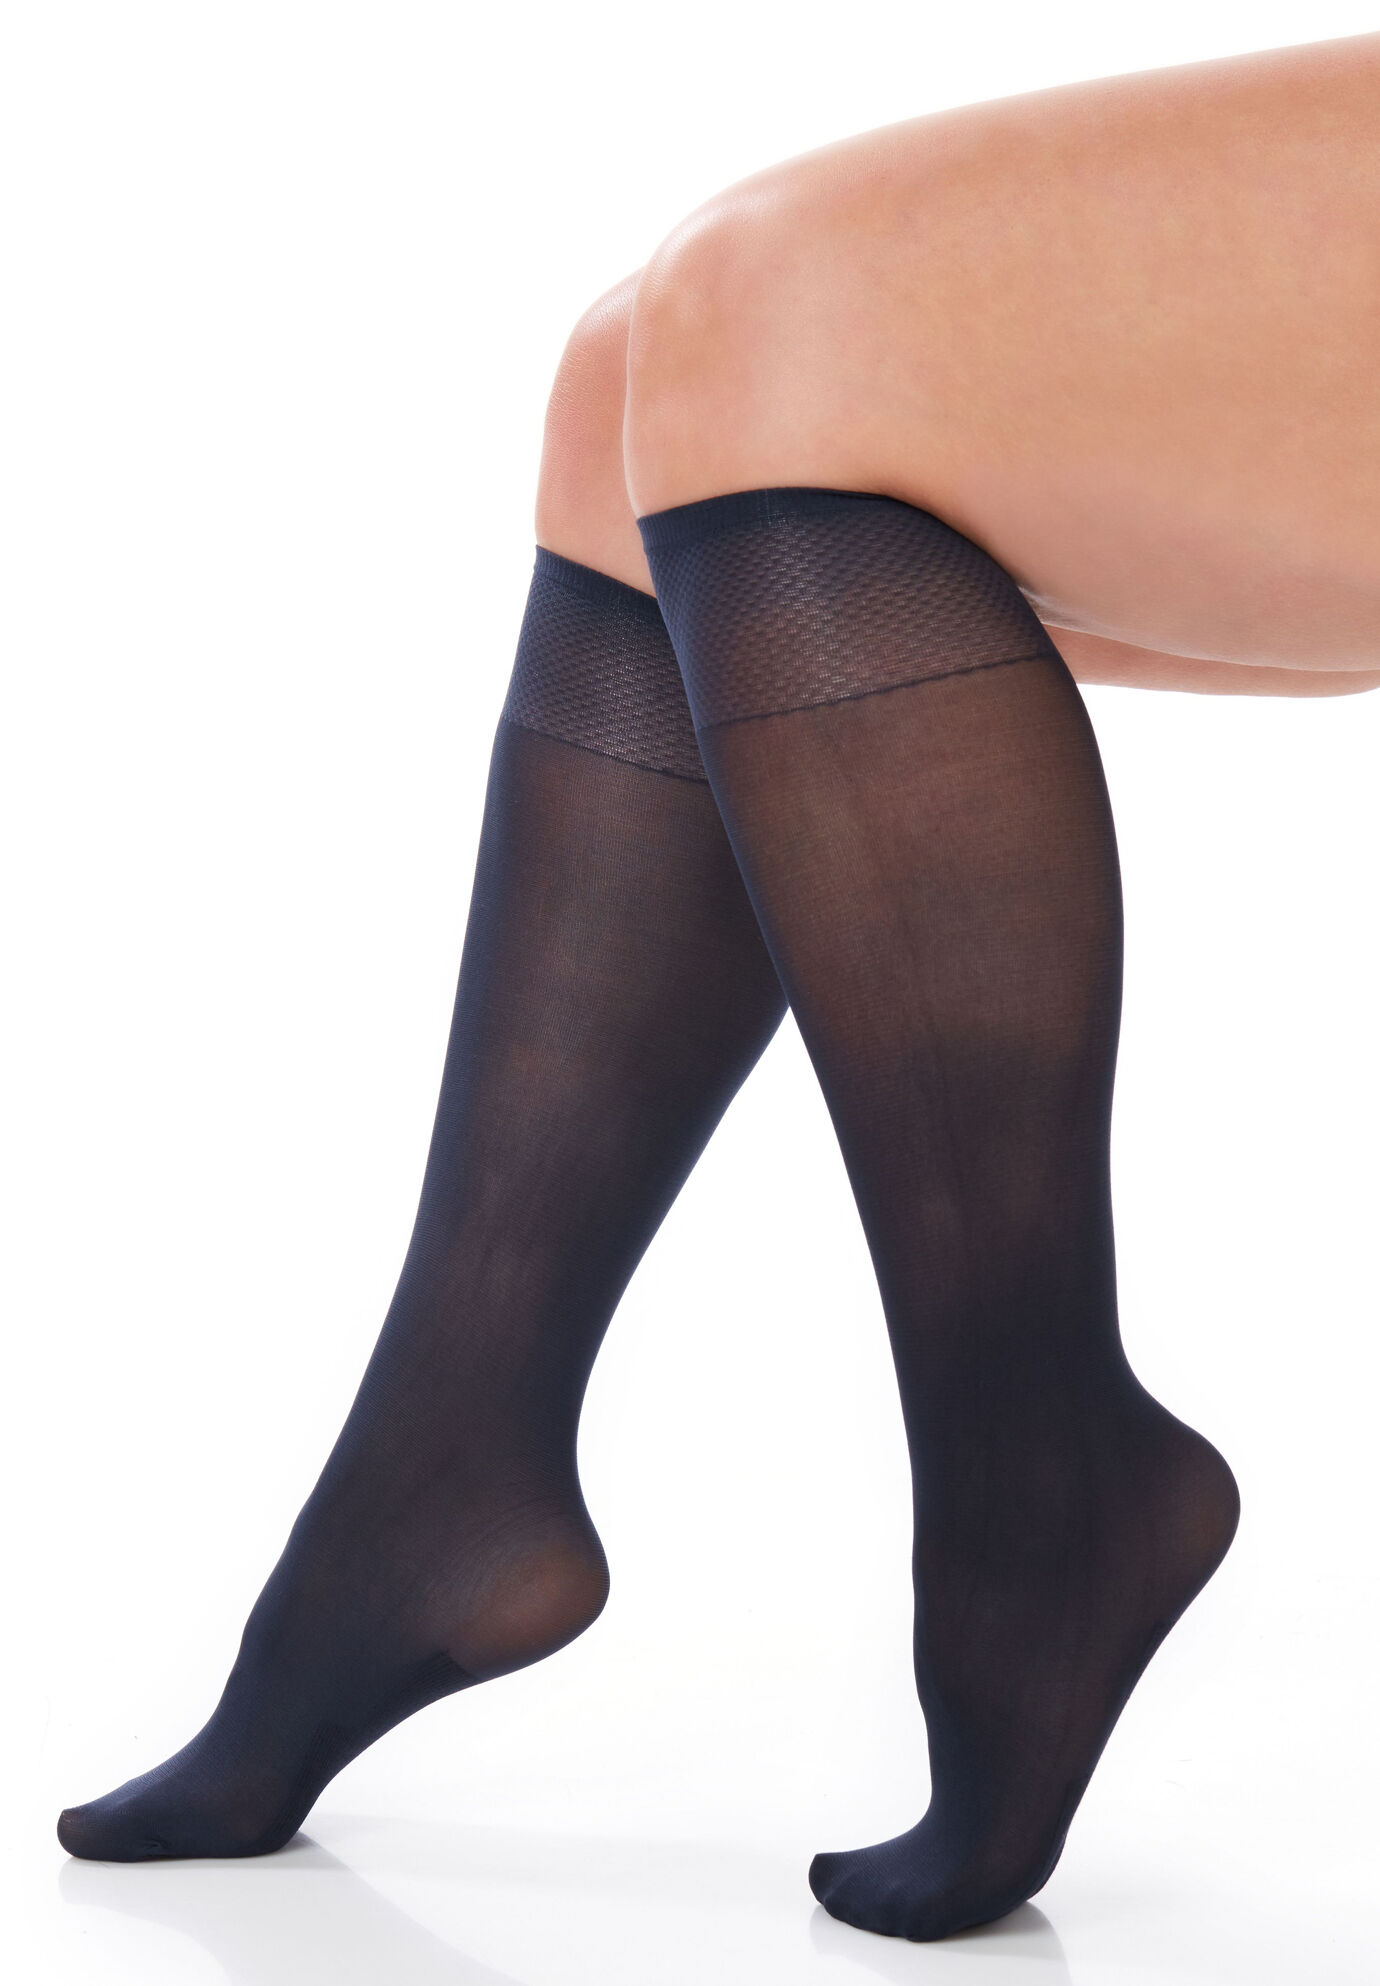 Women s Mesh Short Ankle Socks Star Fishnet Socks Sexy Nylon Ankle Dress  Socks | eBay